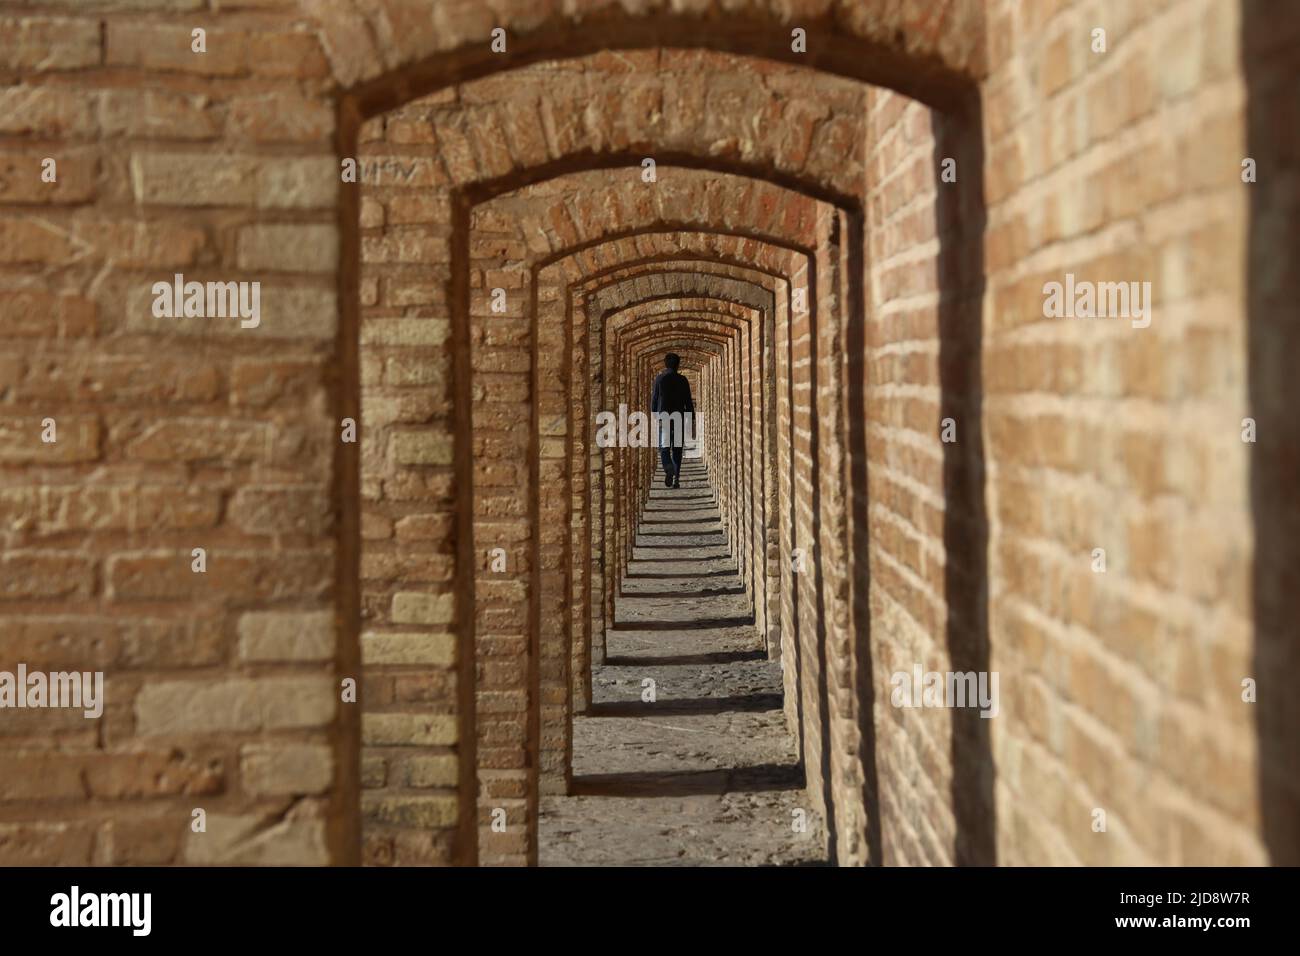 Allah-Verdi-Khan-Brücke in Isfahan, Iran. Auf persisch heißt sie Si-o-se Pol. Die Brücke hat zwei Etagen und überspannt den Zayandeh Rud. Die Brücke hat 33 Bögen. Eine Person geht durch den Bogengang, Stock Photo